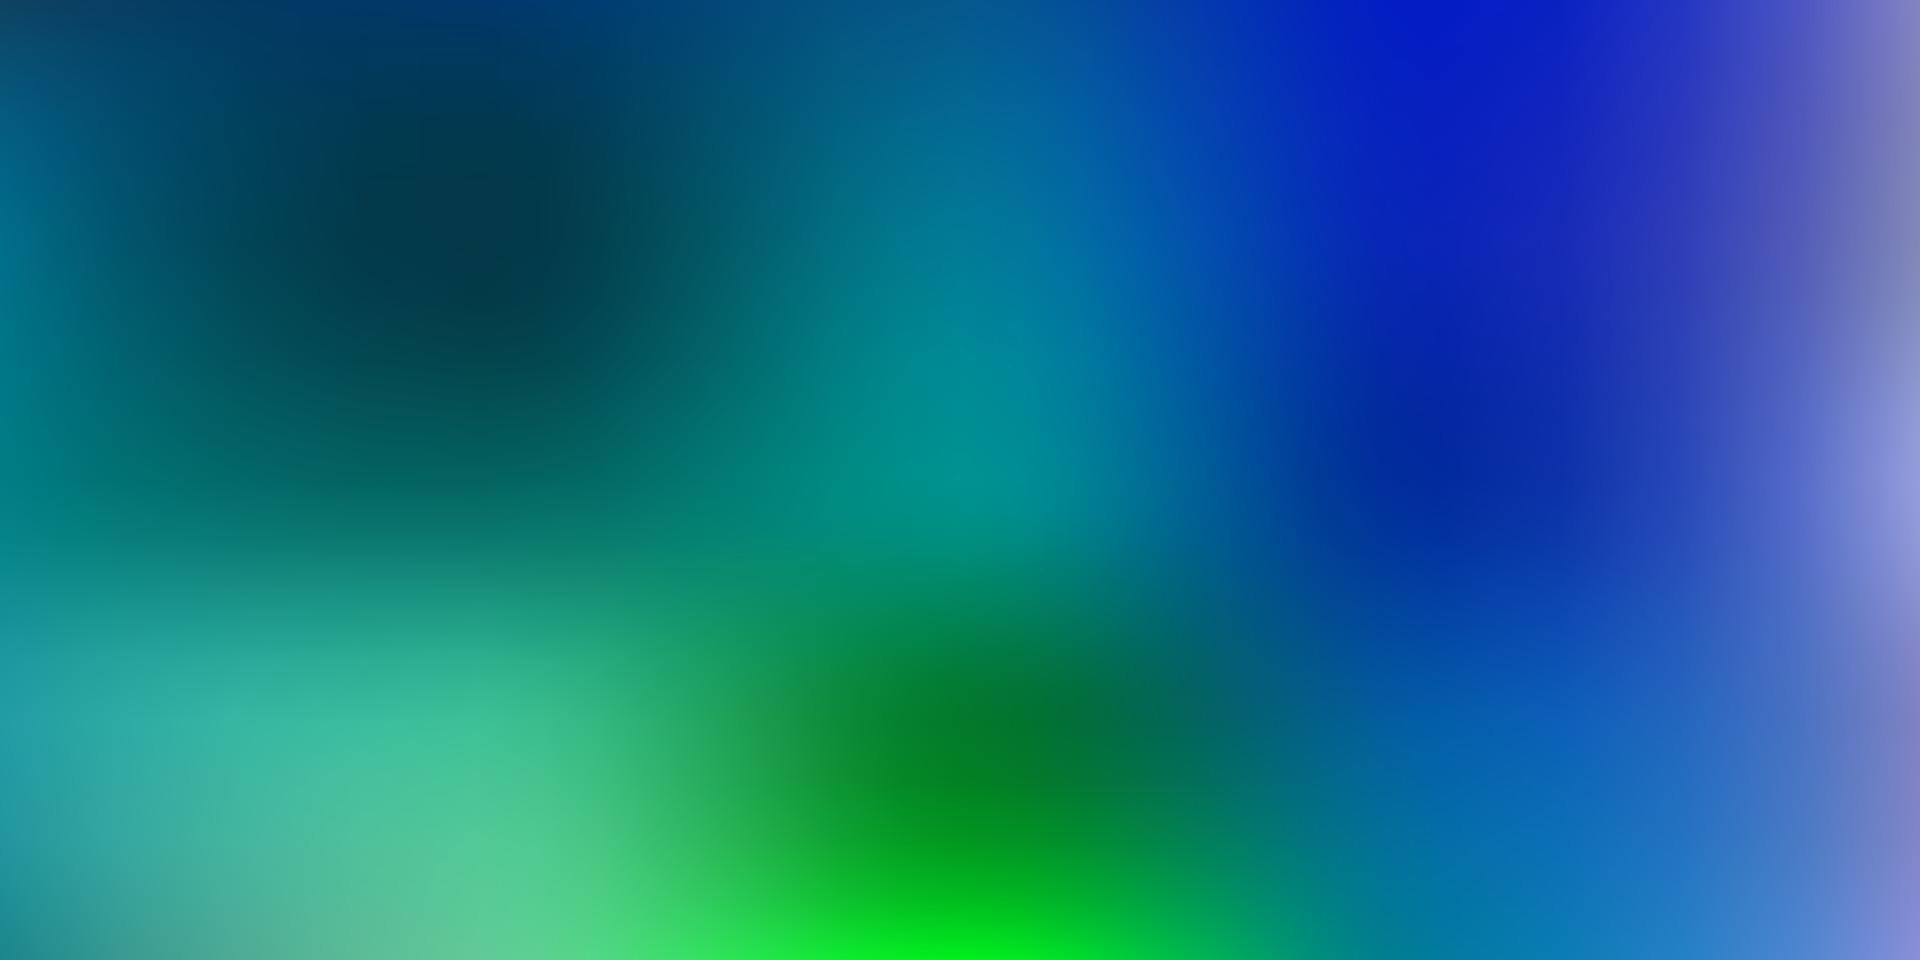 textura borrosa vector azul claro, verde.